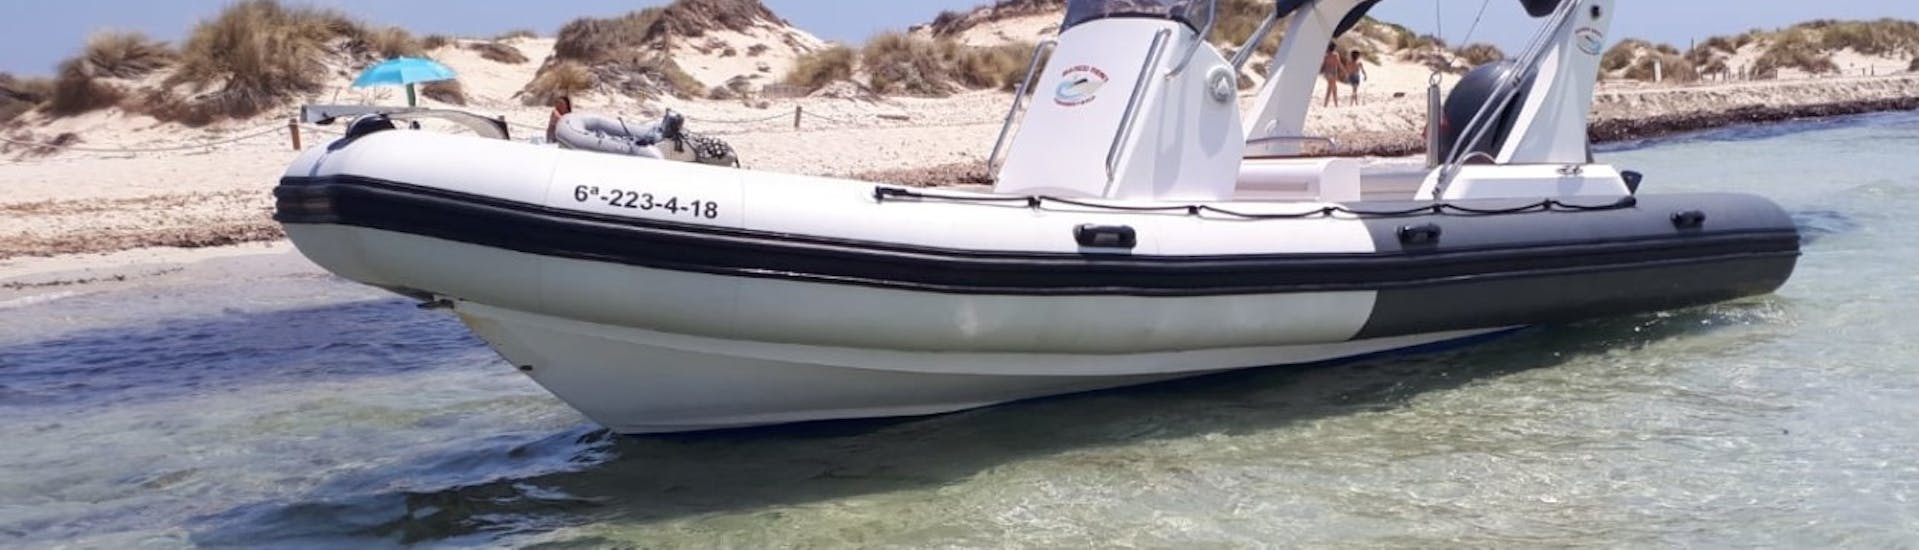 Un barco de alquiler con licencia en Formentera para hasta 12 personas con Barco Rent Formentera.